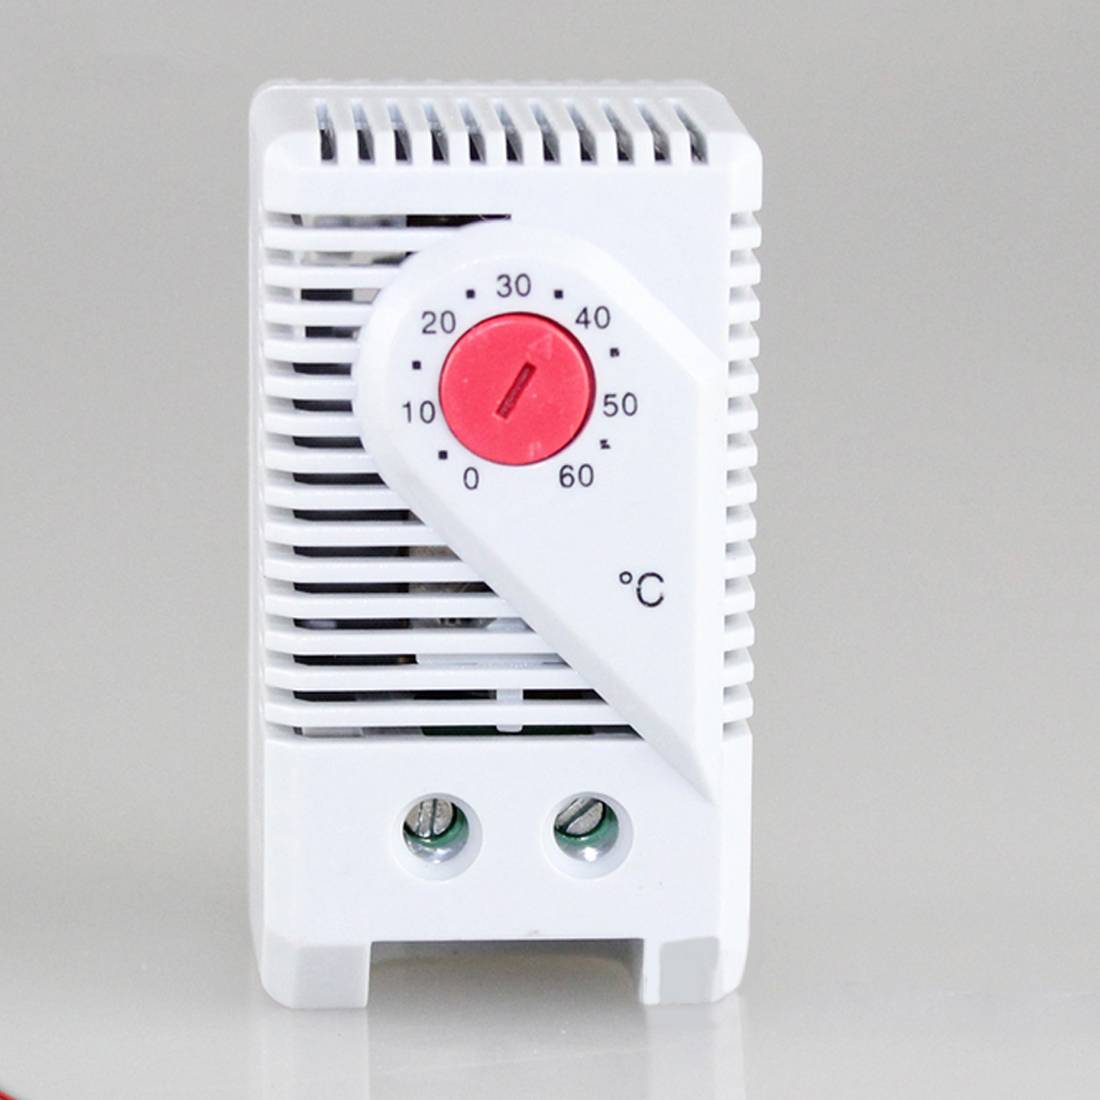 Терморегуляторы для регулировки температуры воздуха